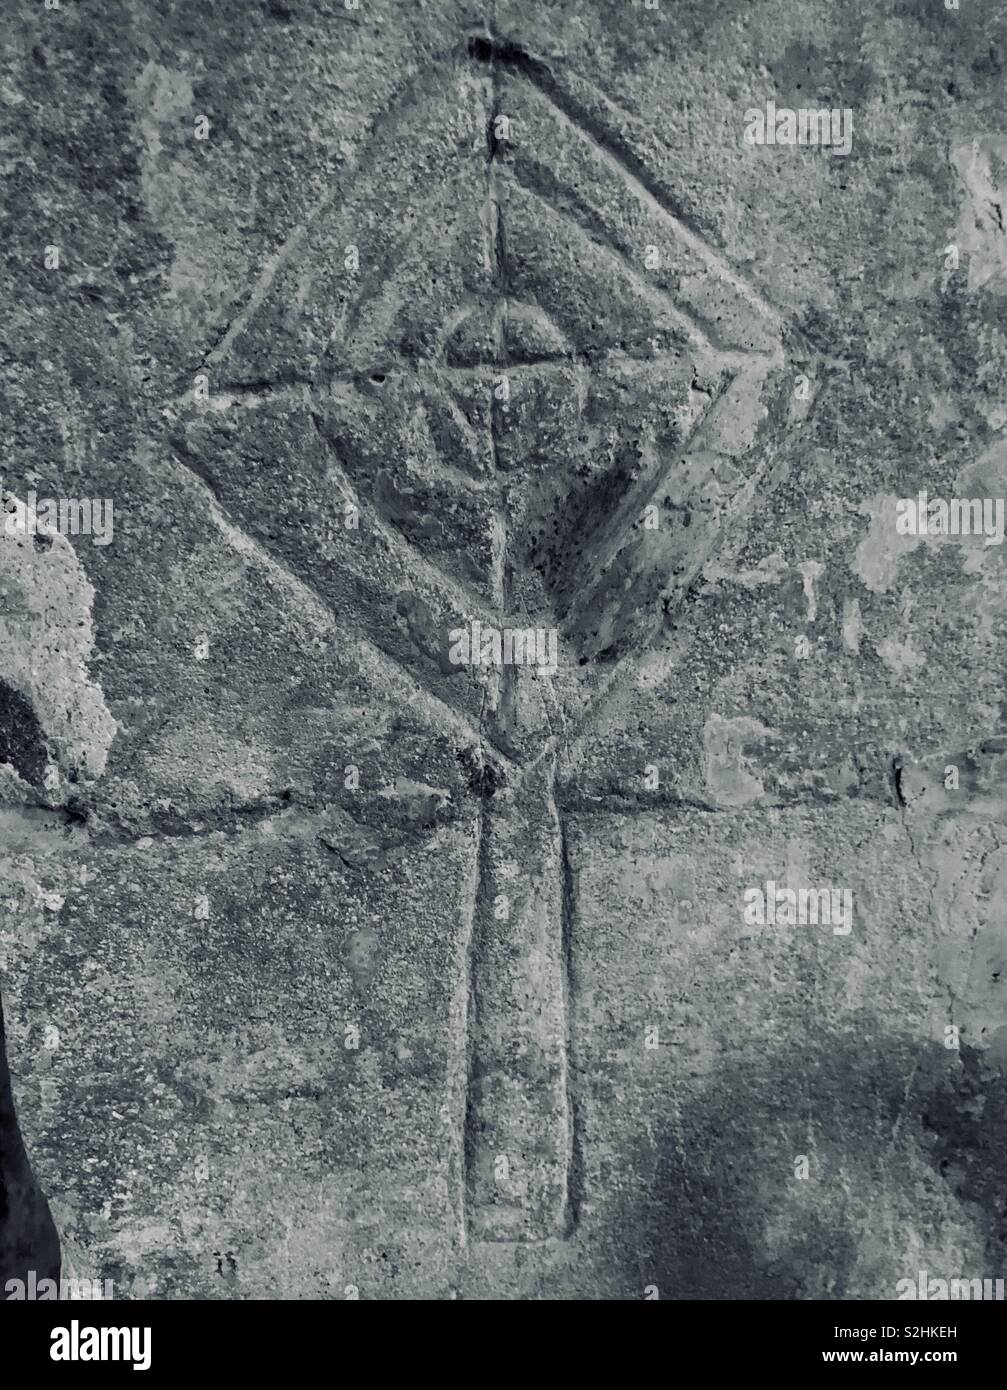 Mittelalterliche Kirche Graffiti eine Weihe Kreuz ausgearbeitet mit einem Netz von Quadraten zu weihen und zu fangen Böse gedacht. Stockfoto